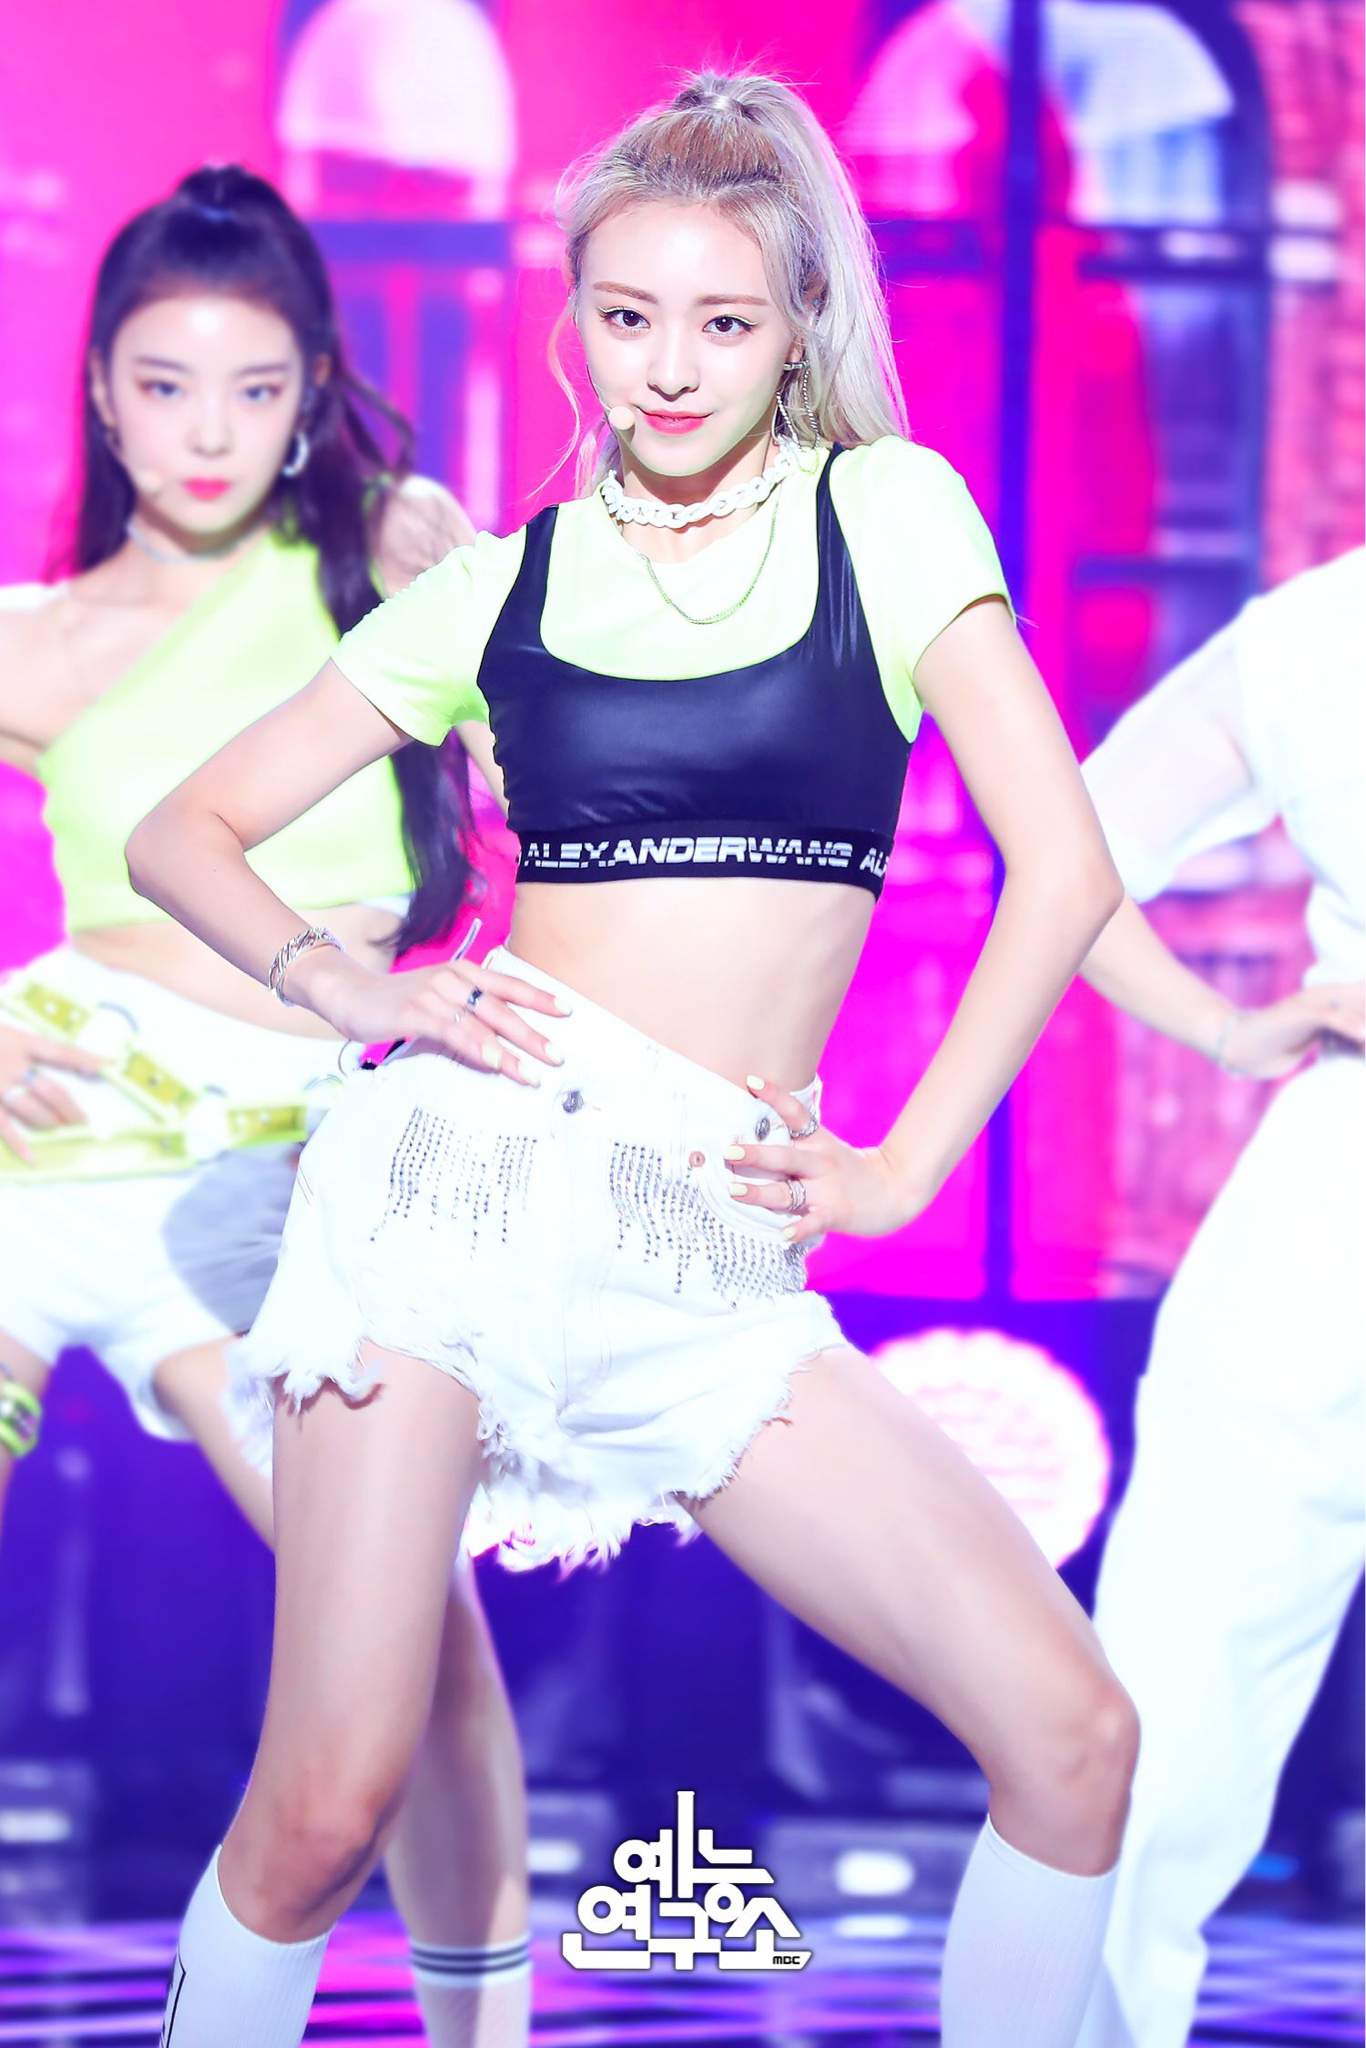 Yuna ITZY lead dancer